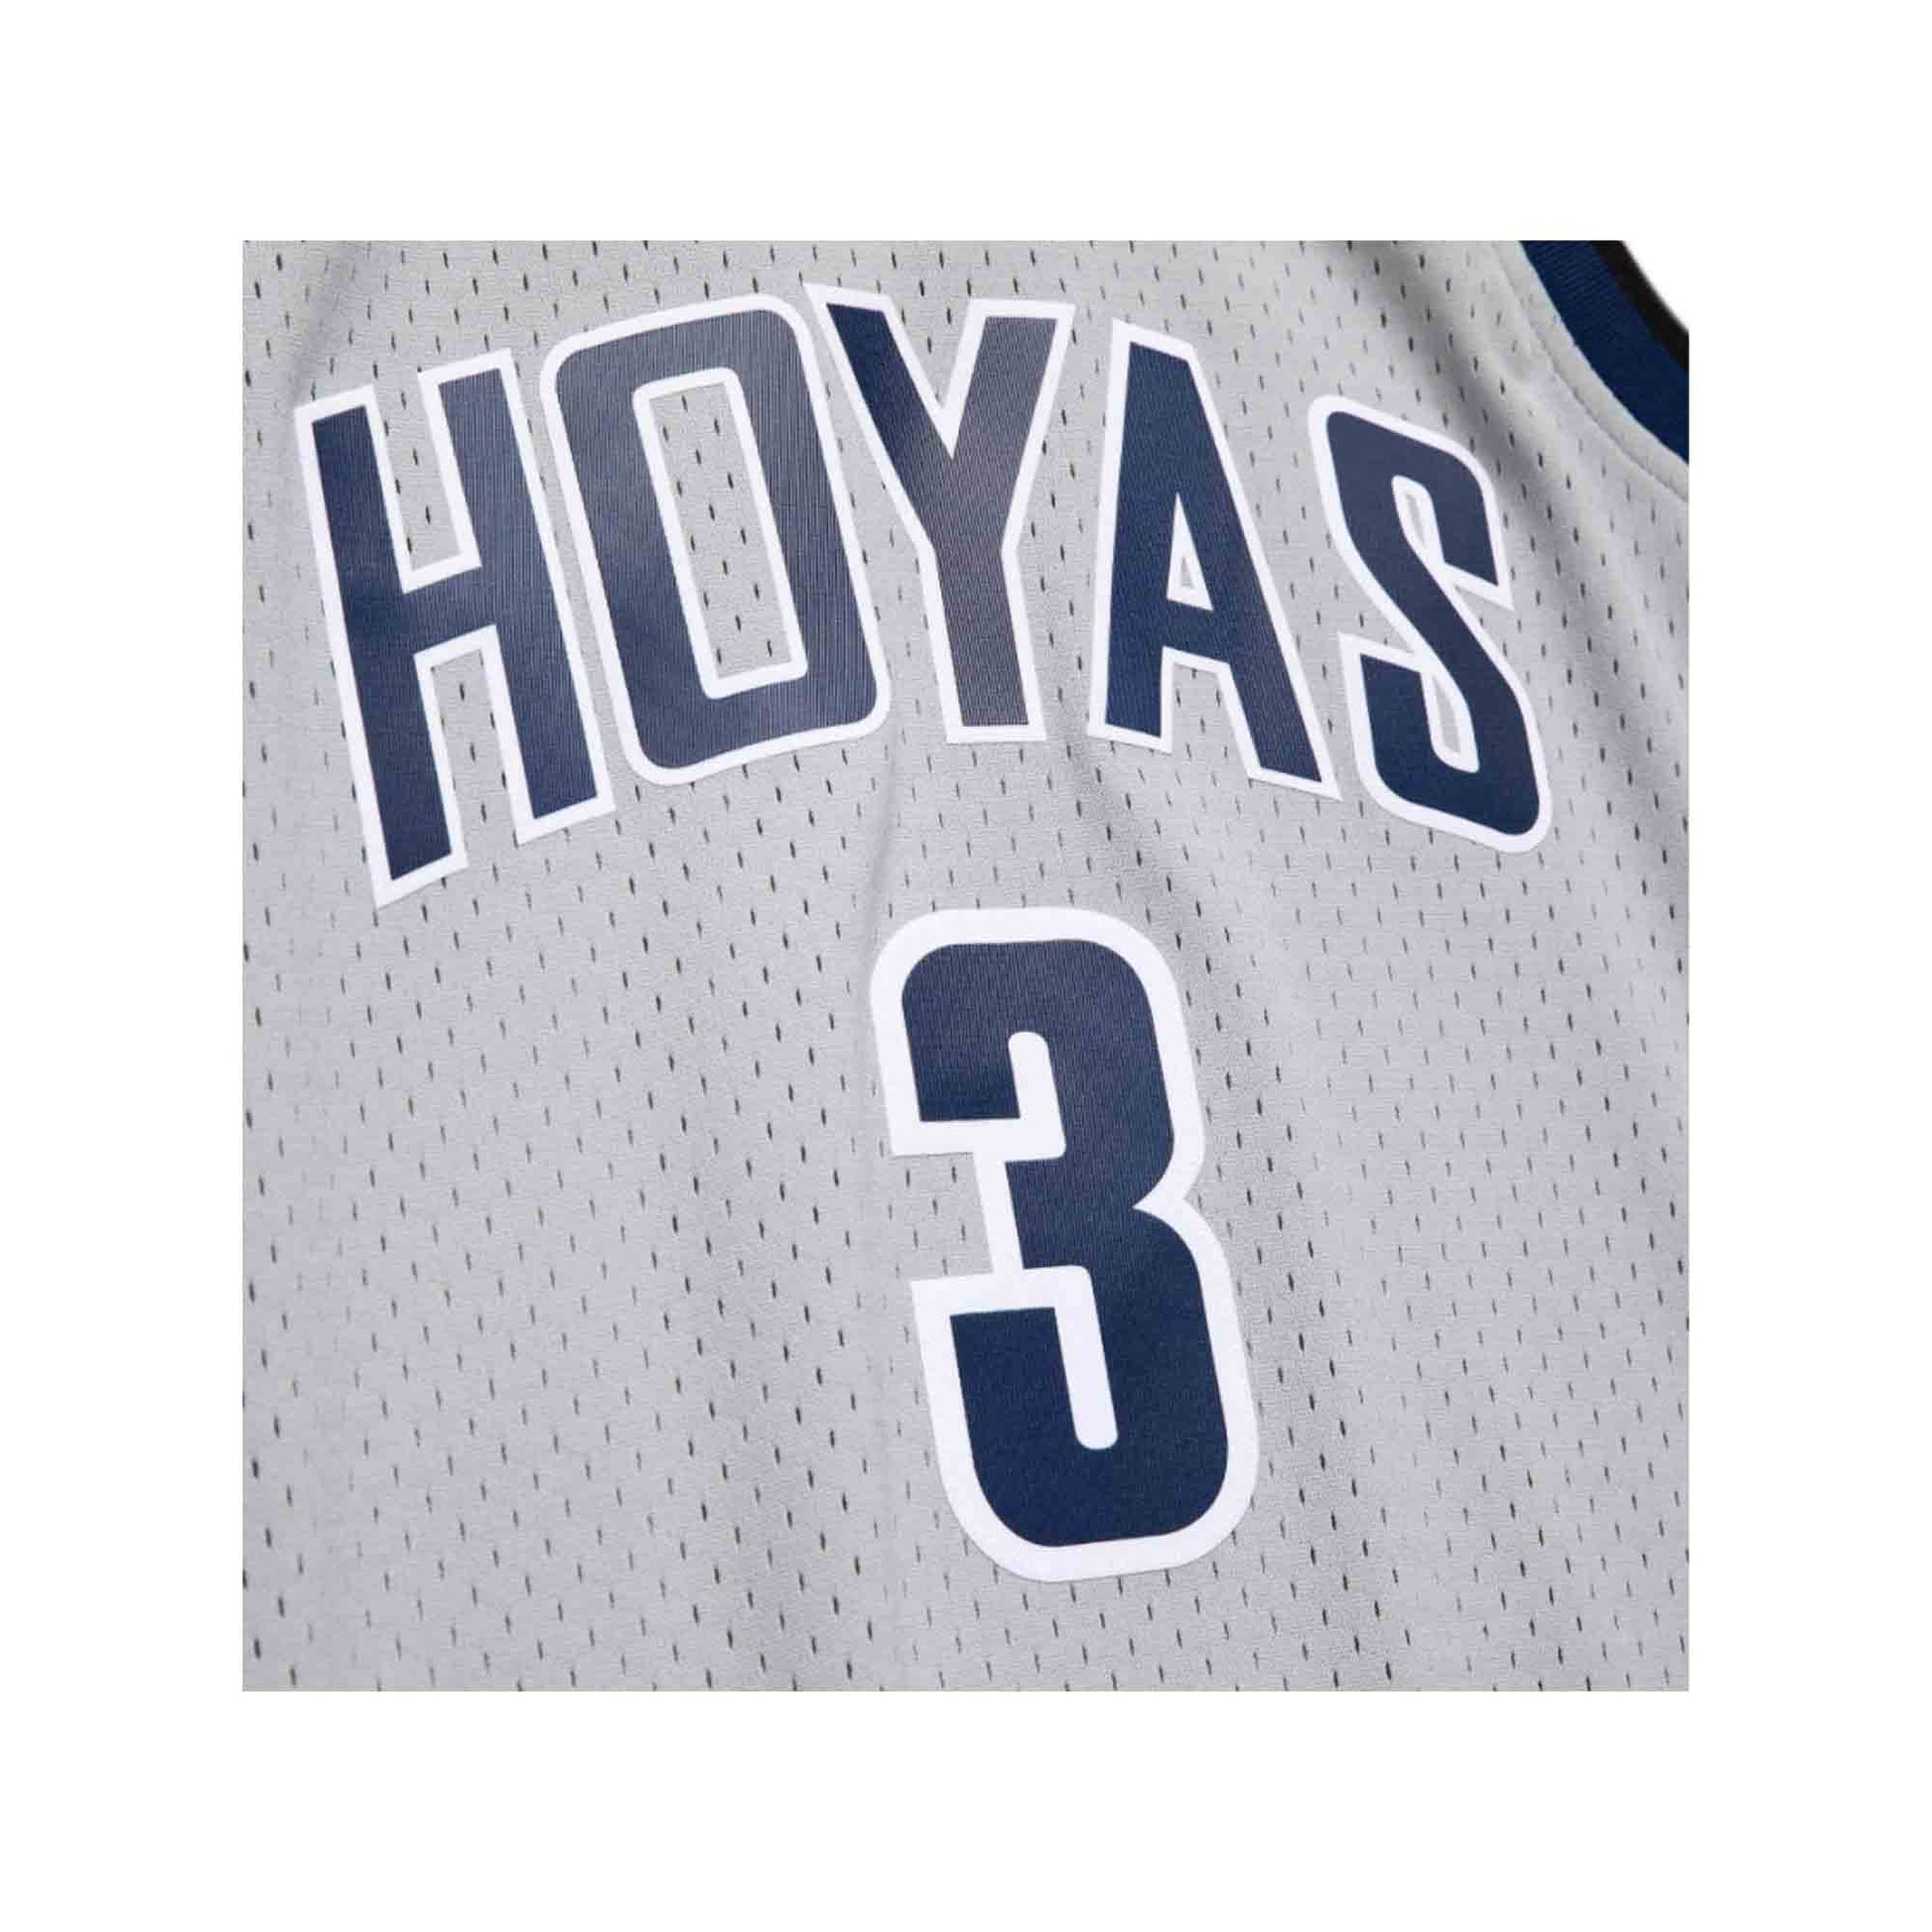 Allen Iverson Georgetown University Hoyas Jerseys